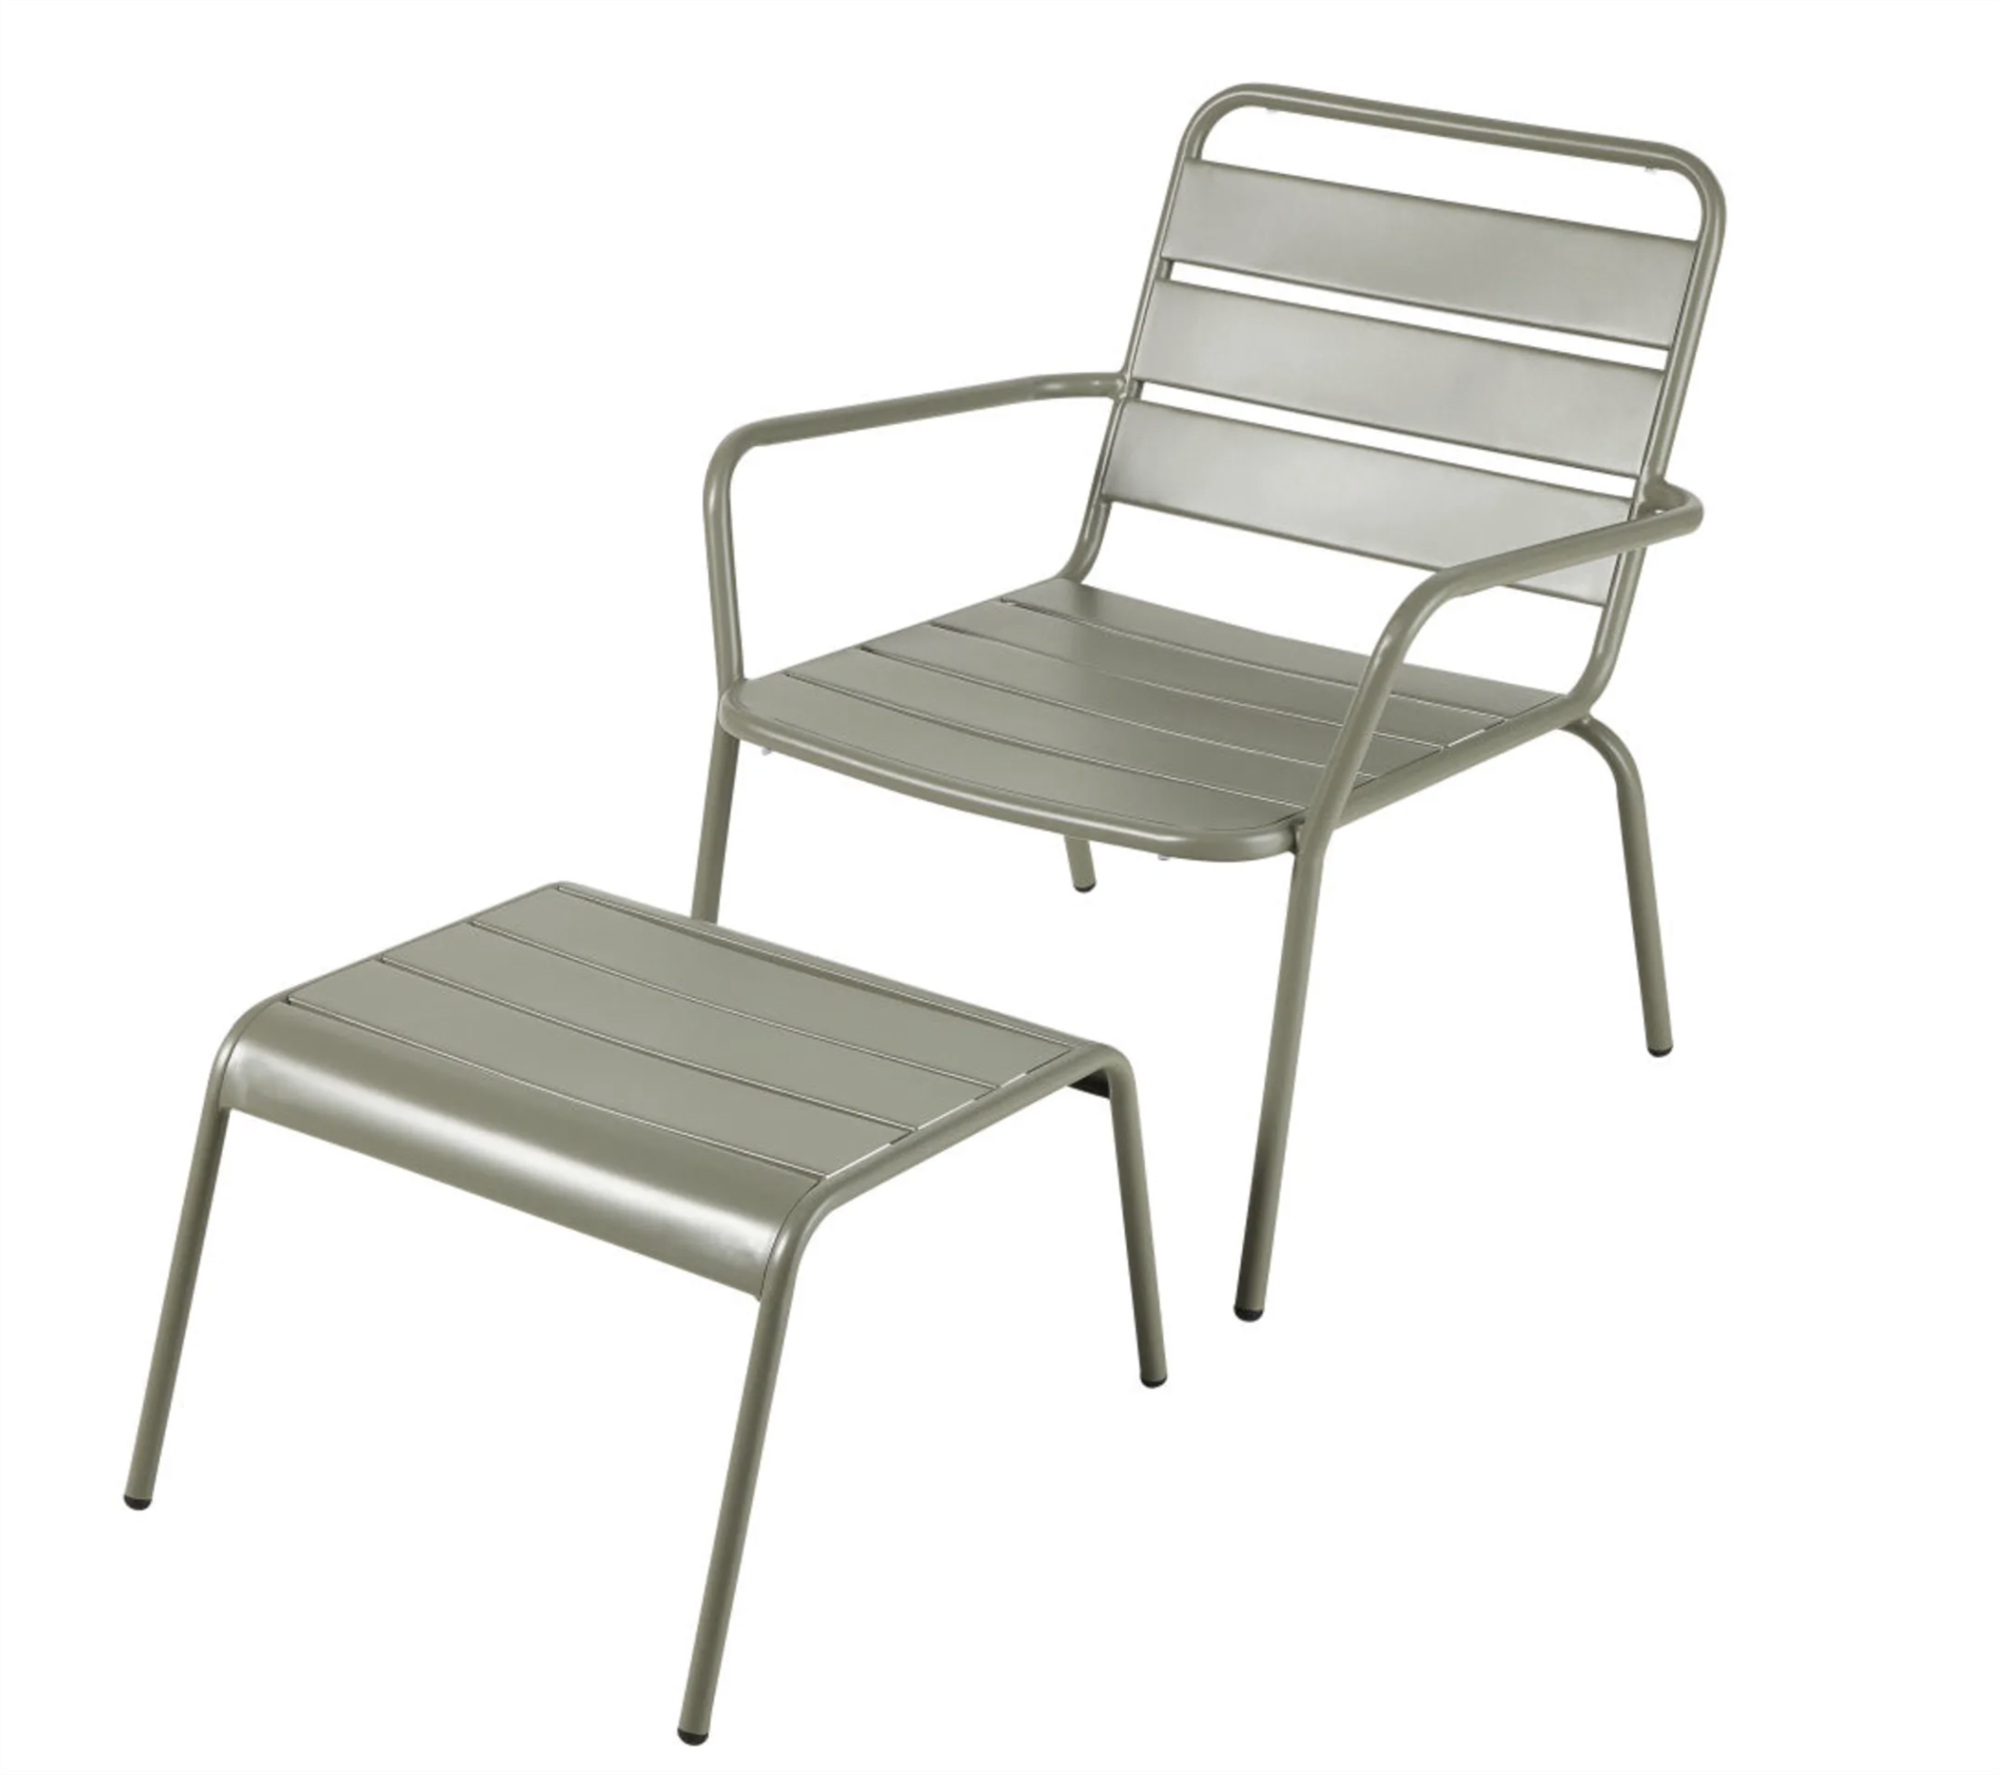 El modelo gris antracita para el sillón